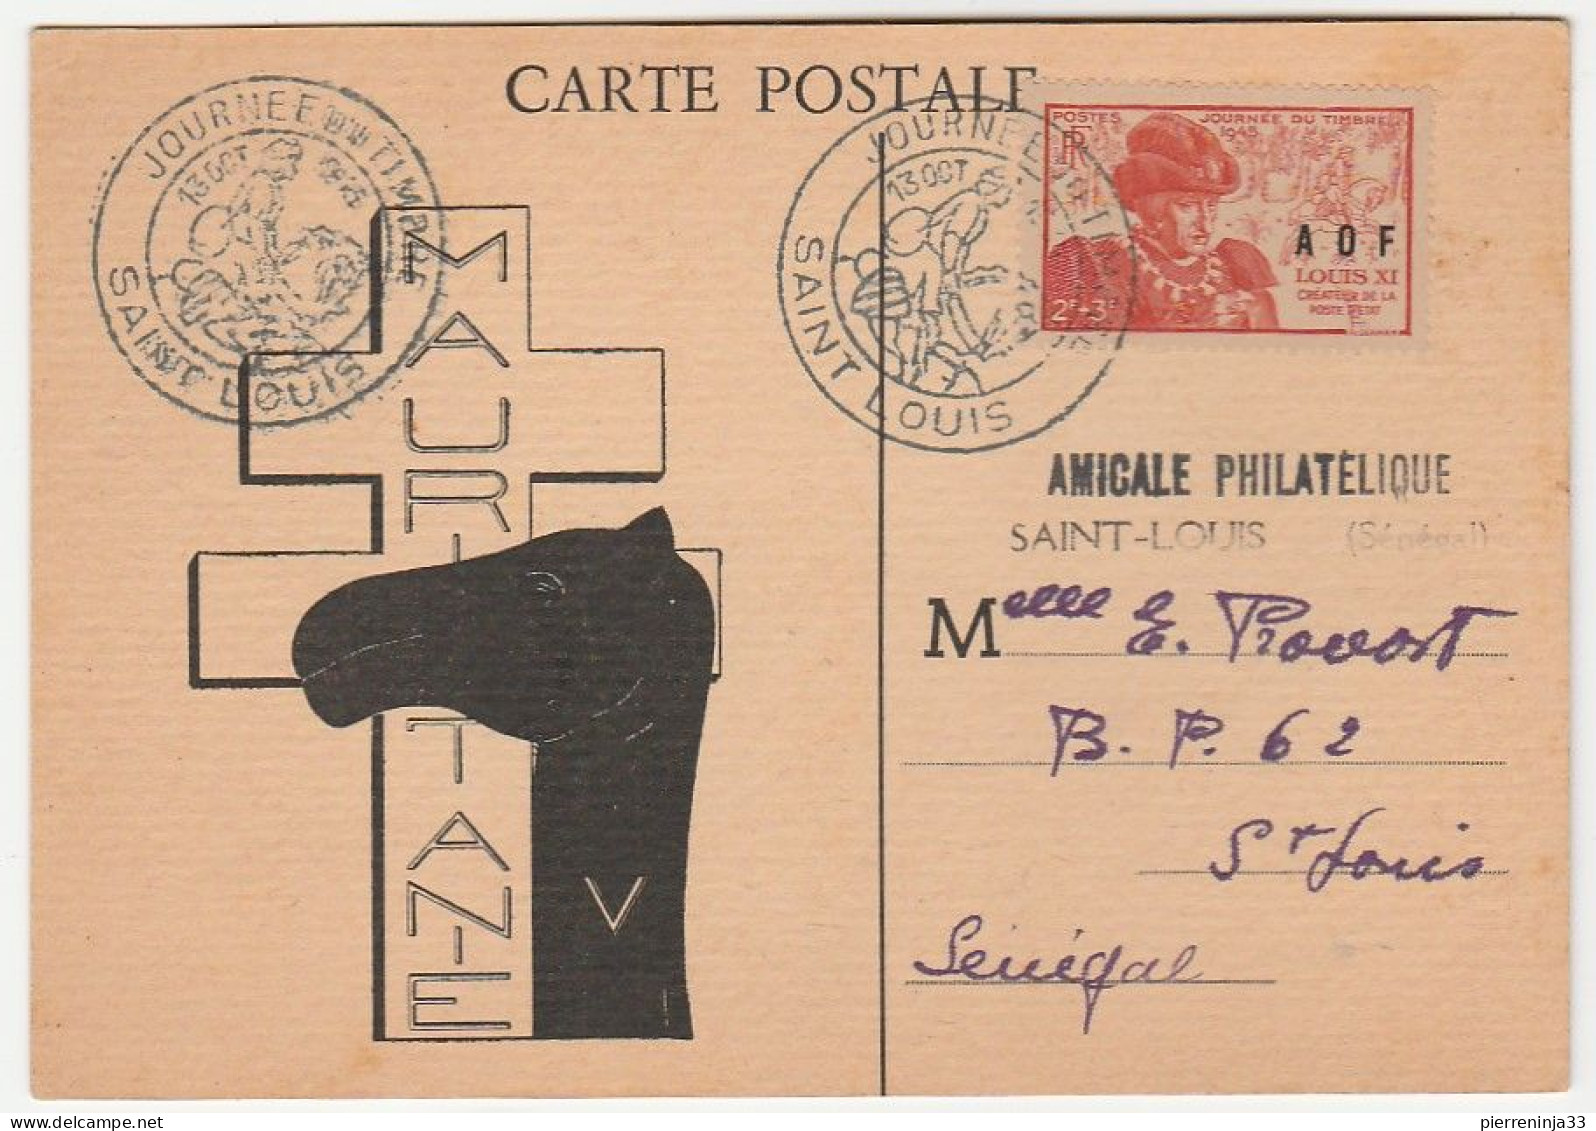 Carte Journée Du Timbre, A.O.F. Saint Louis / Sénégal, 1945 - Covers & Documents